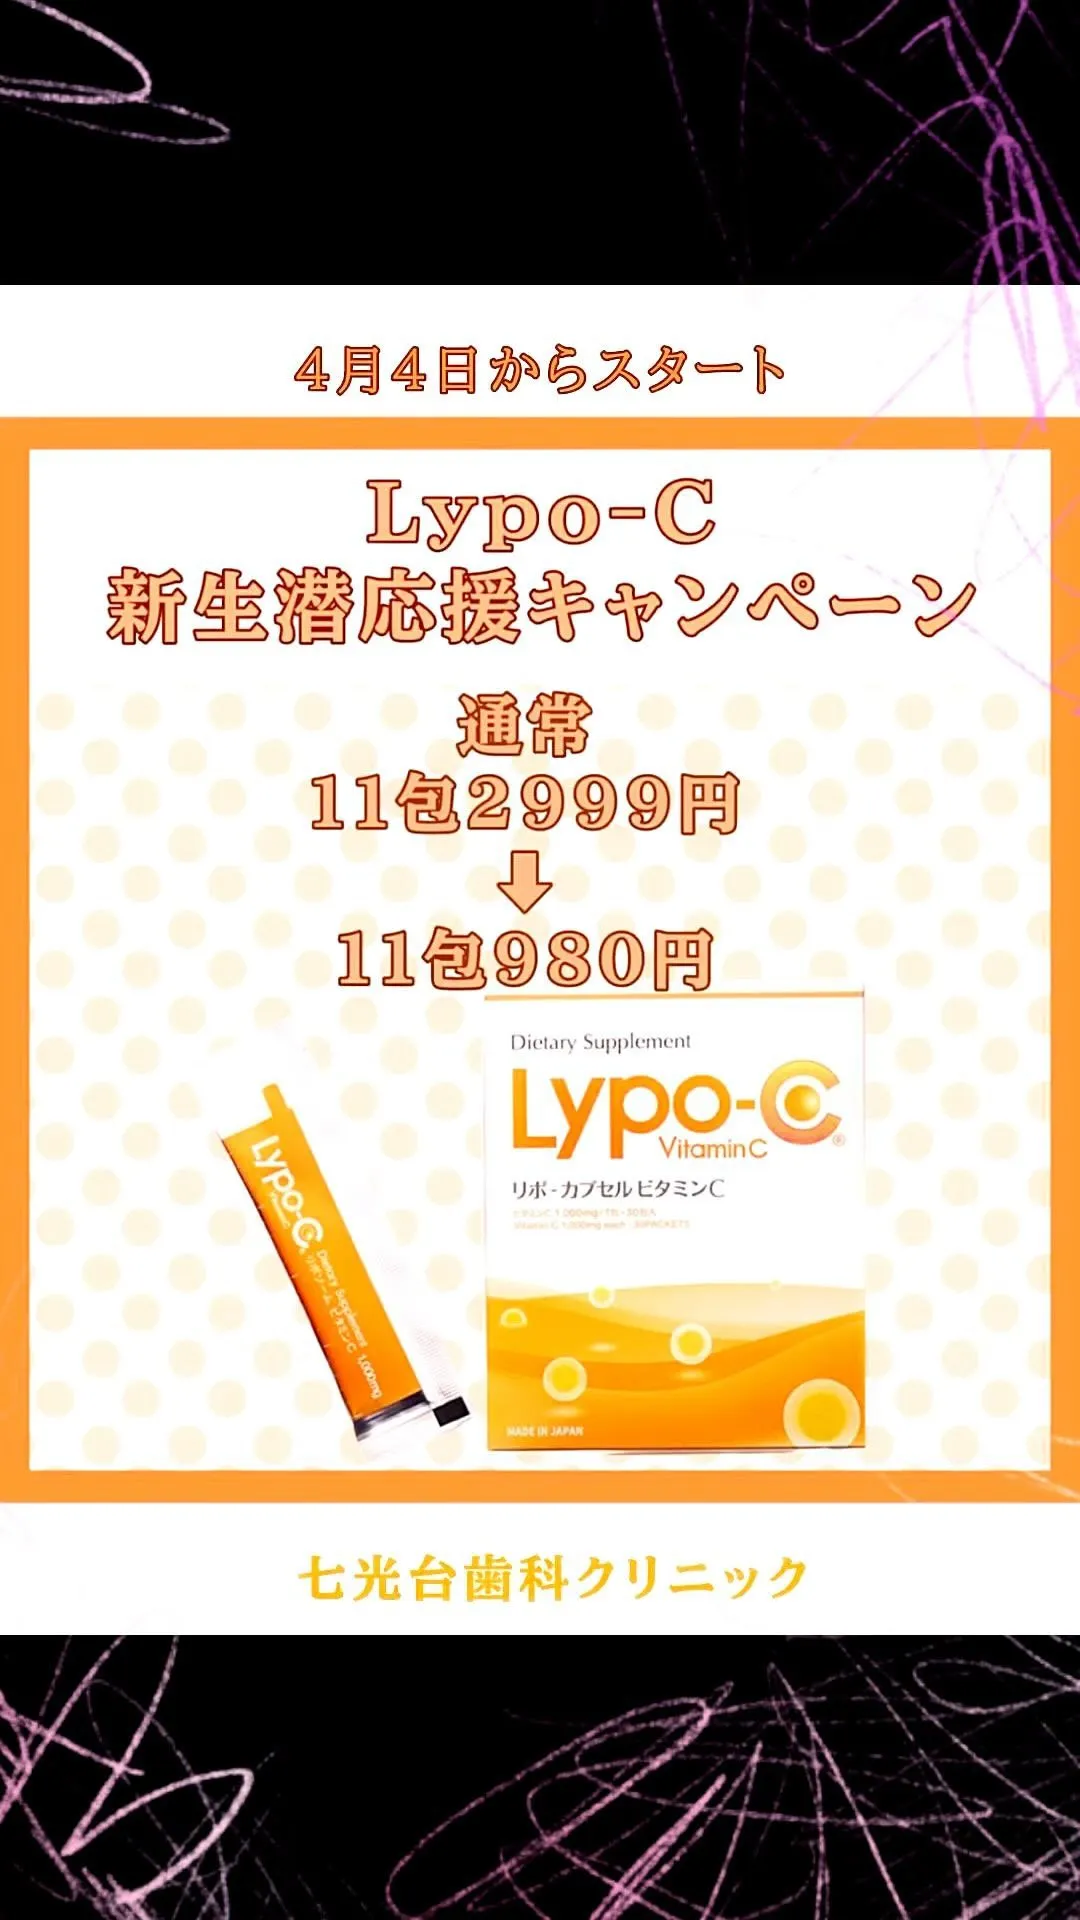 明日よりリポC11包980円キャンペーンが始まります。